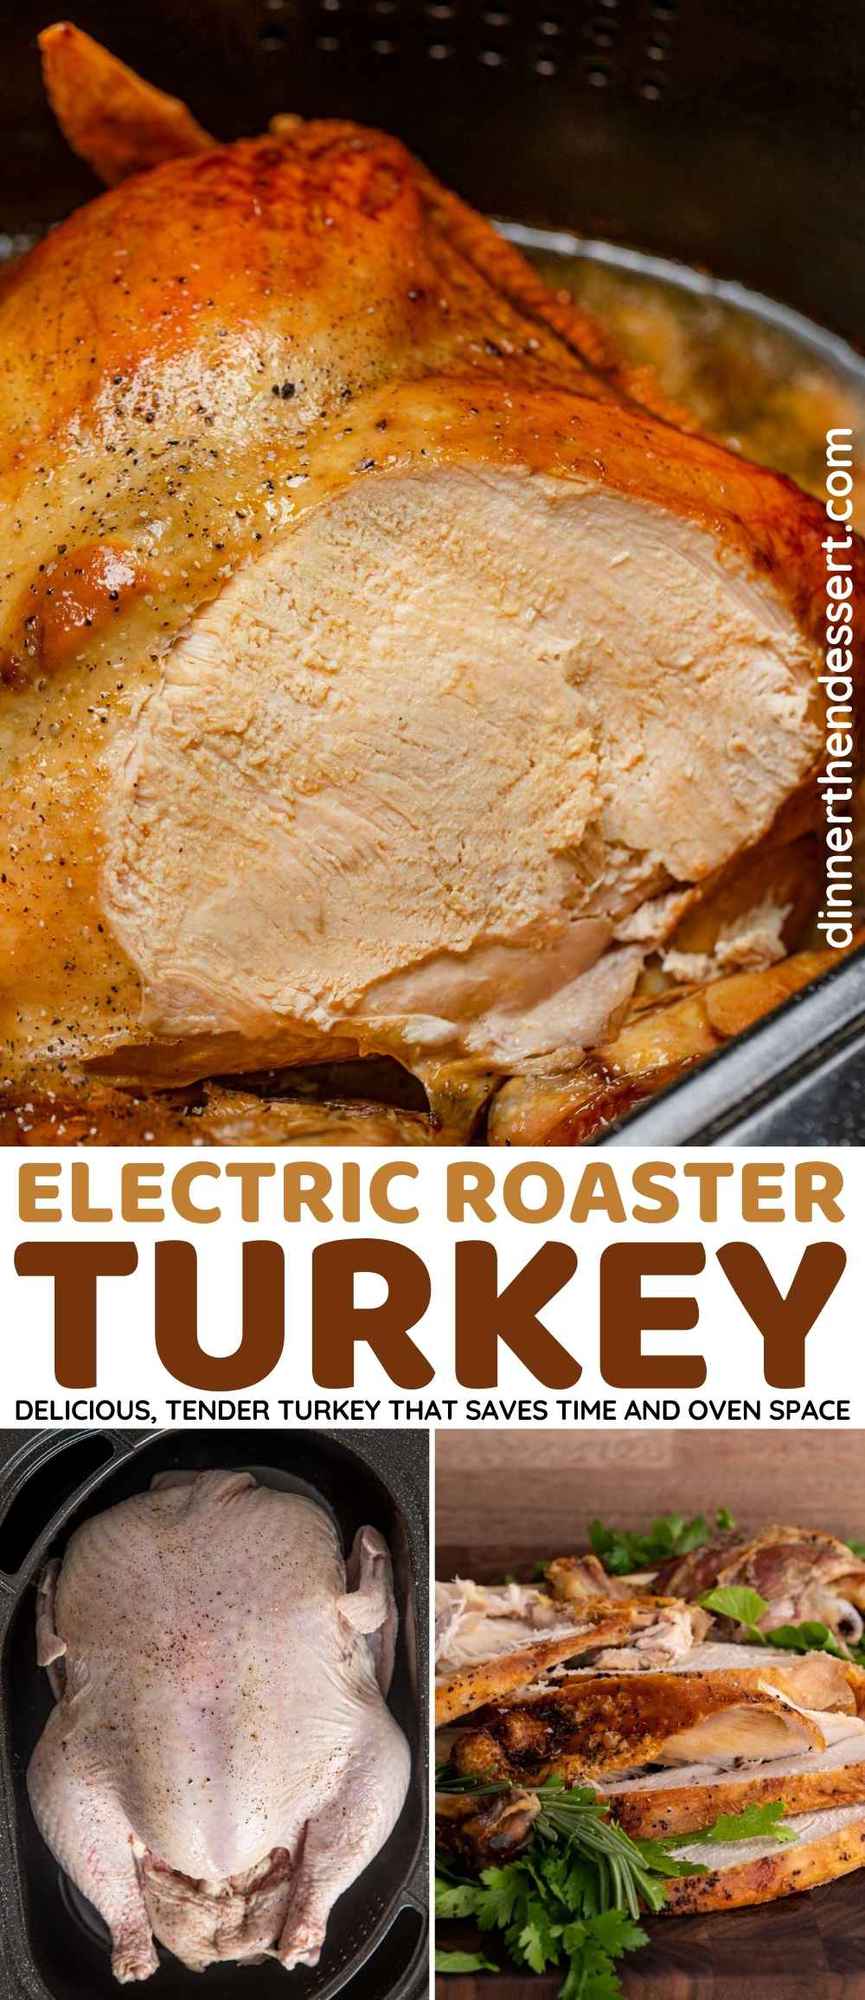 https://dinnerthendessert.com/wp-content/uploads/2019/11/Roaster-Oven-Turkey-L.jpg